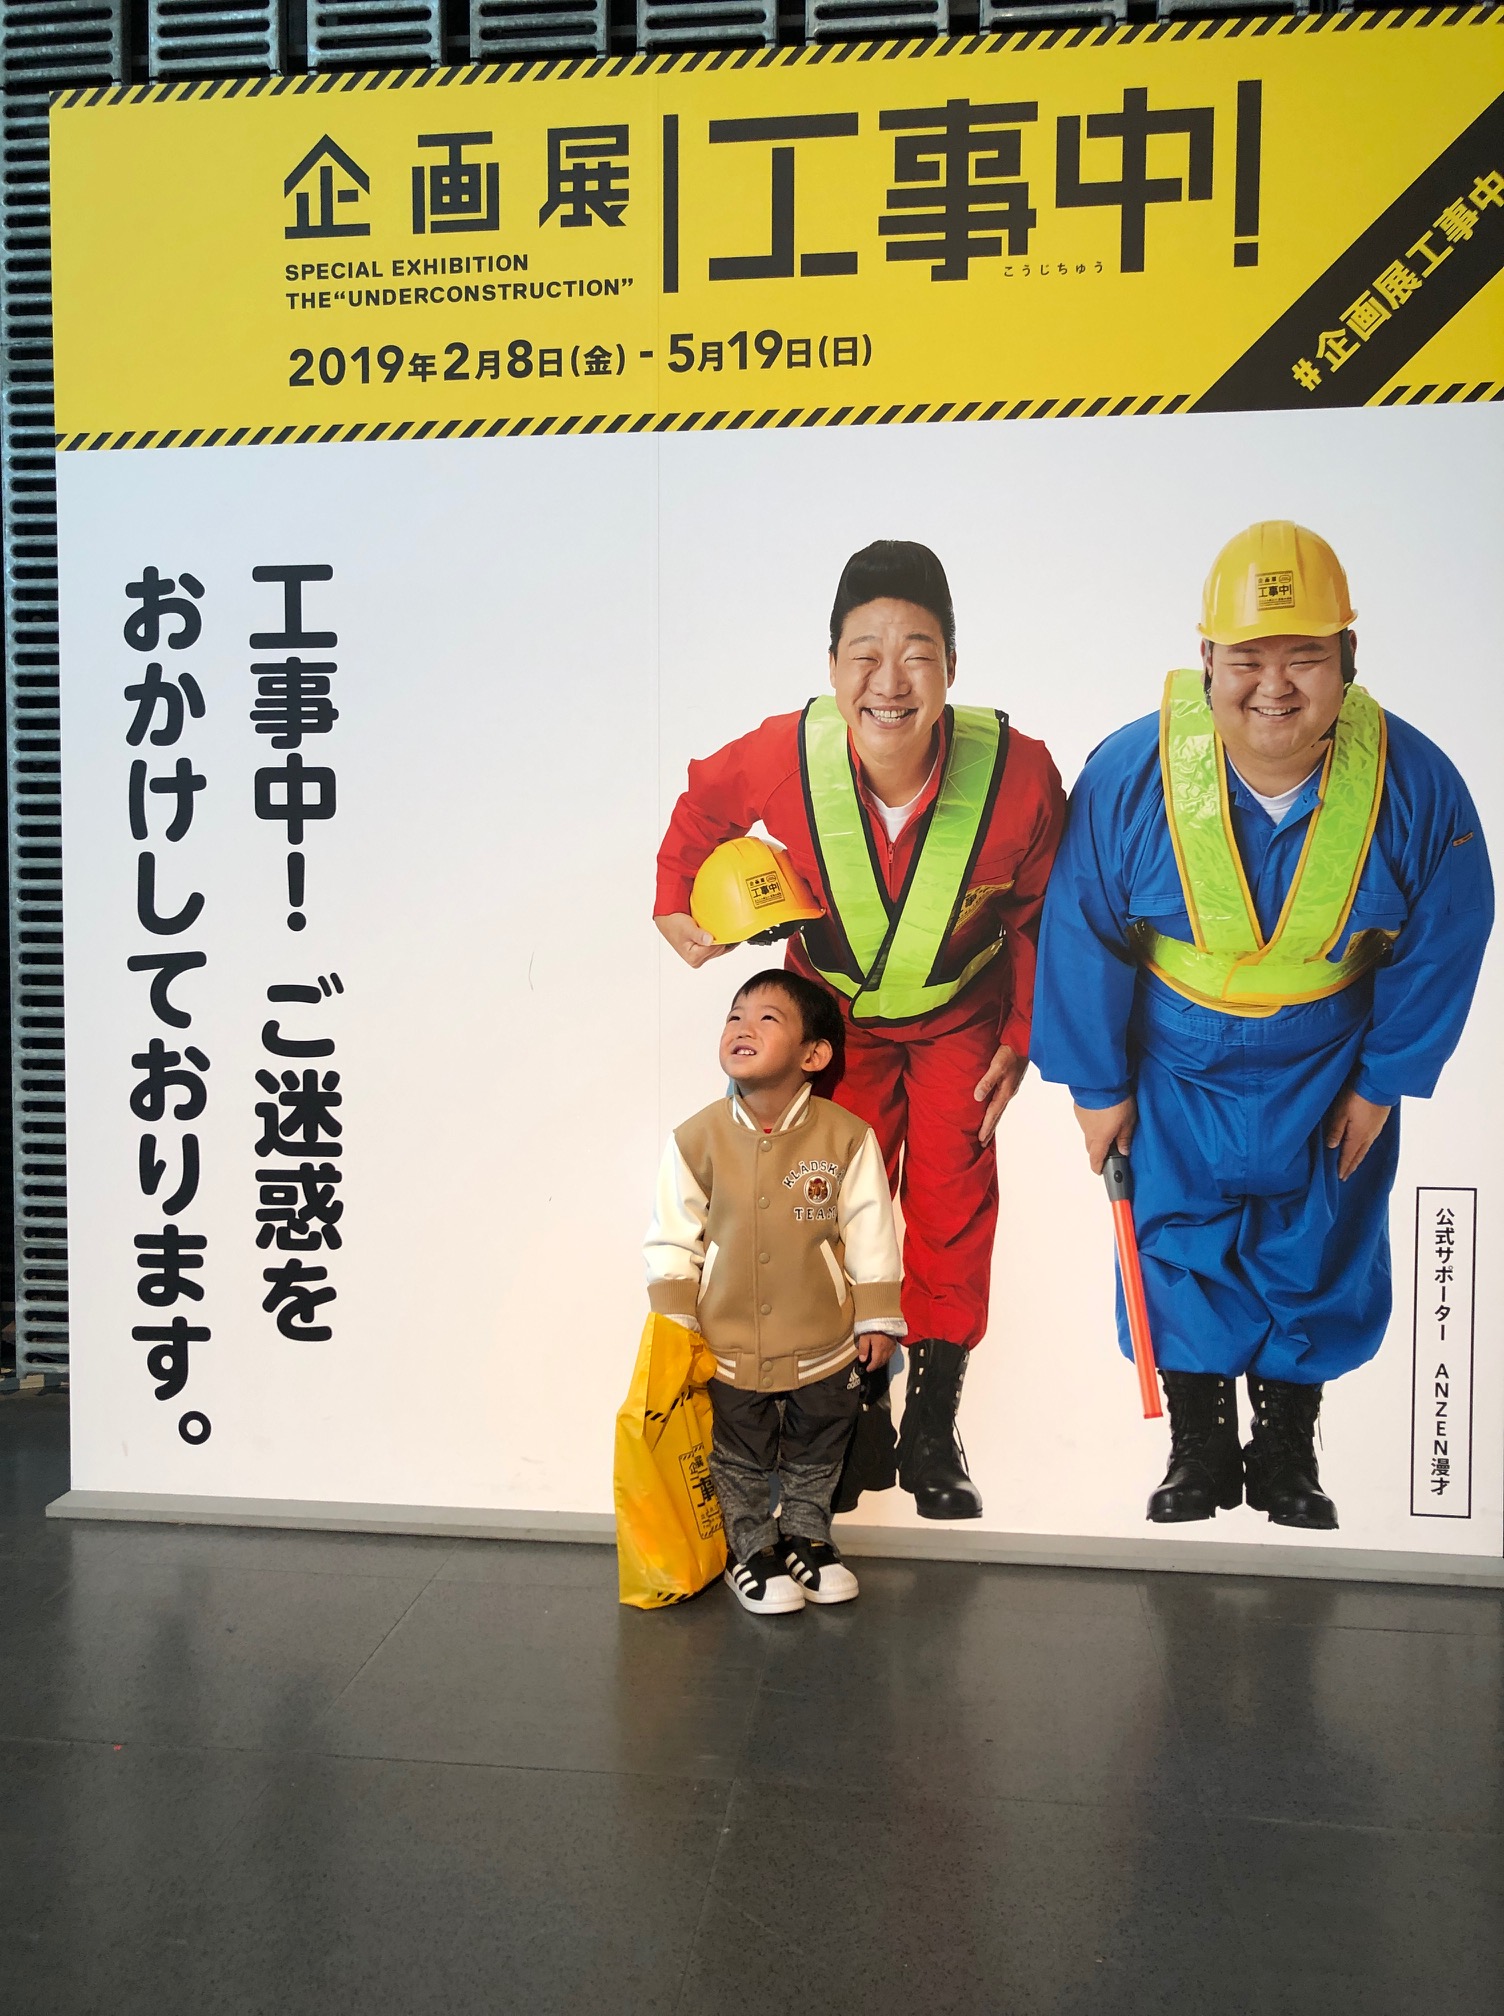 日本科学未来館の企画展「工事中」は、乗り物好きの男の子にはおススメのお出かけスポット！